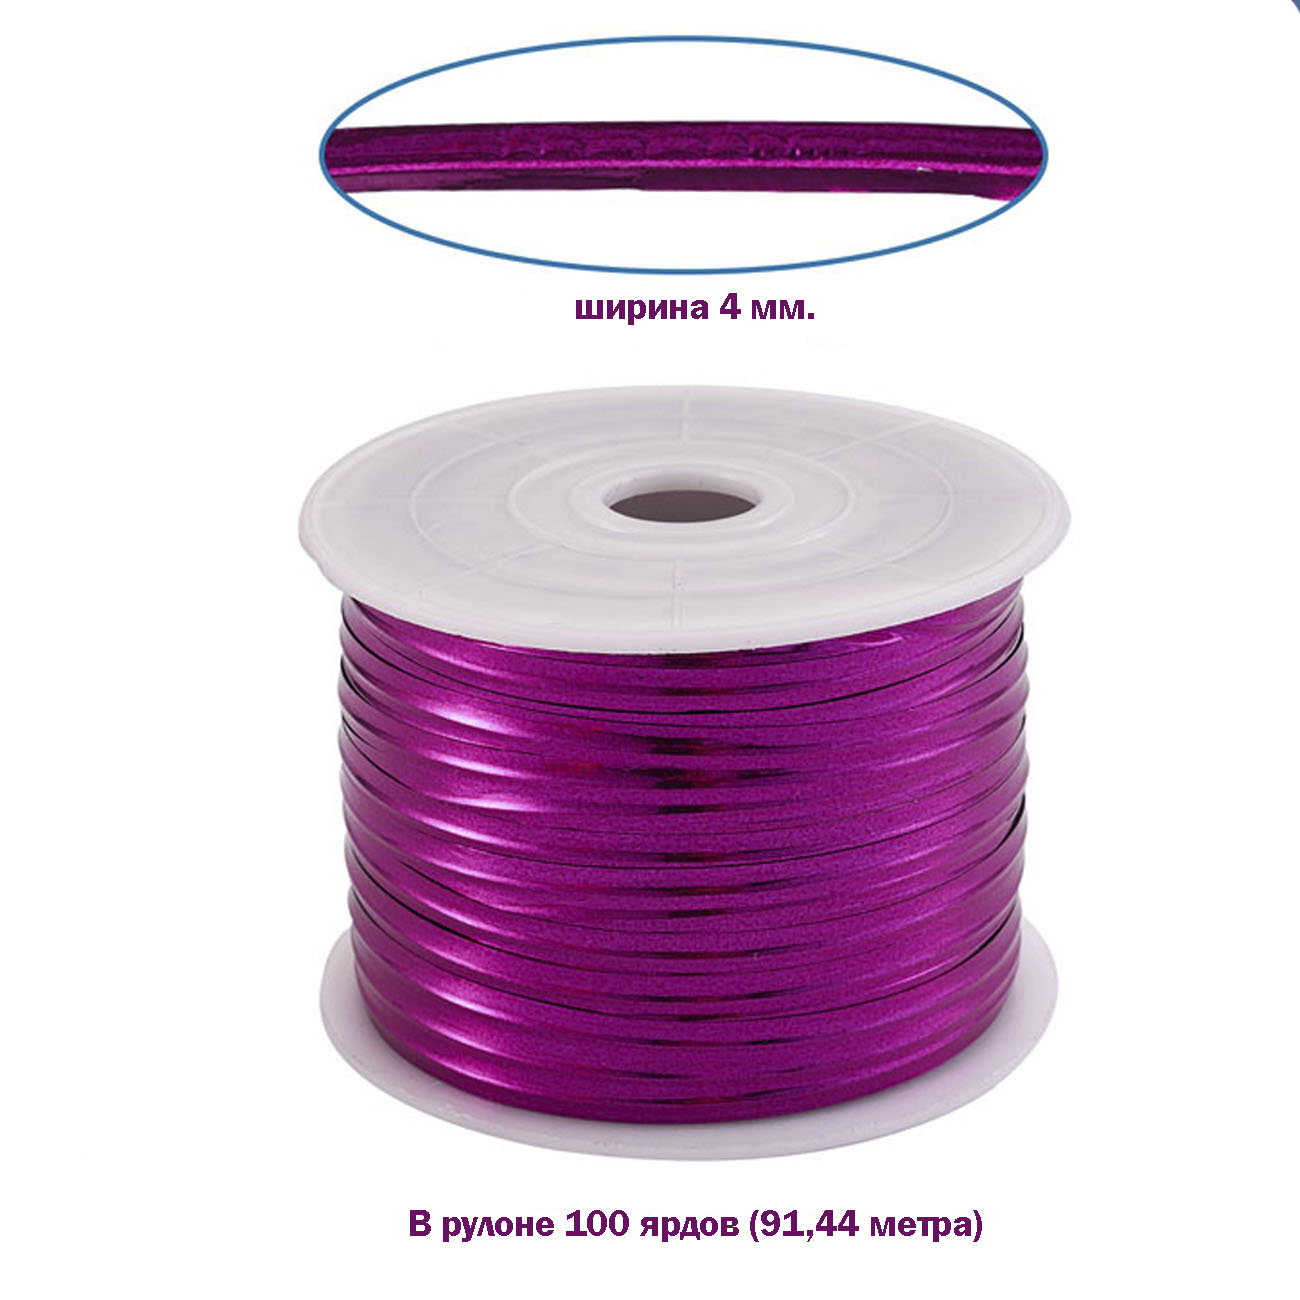 упаковочные скрутики проволока фиолетового цвета